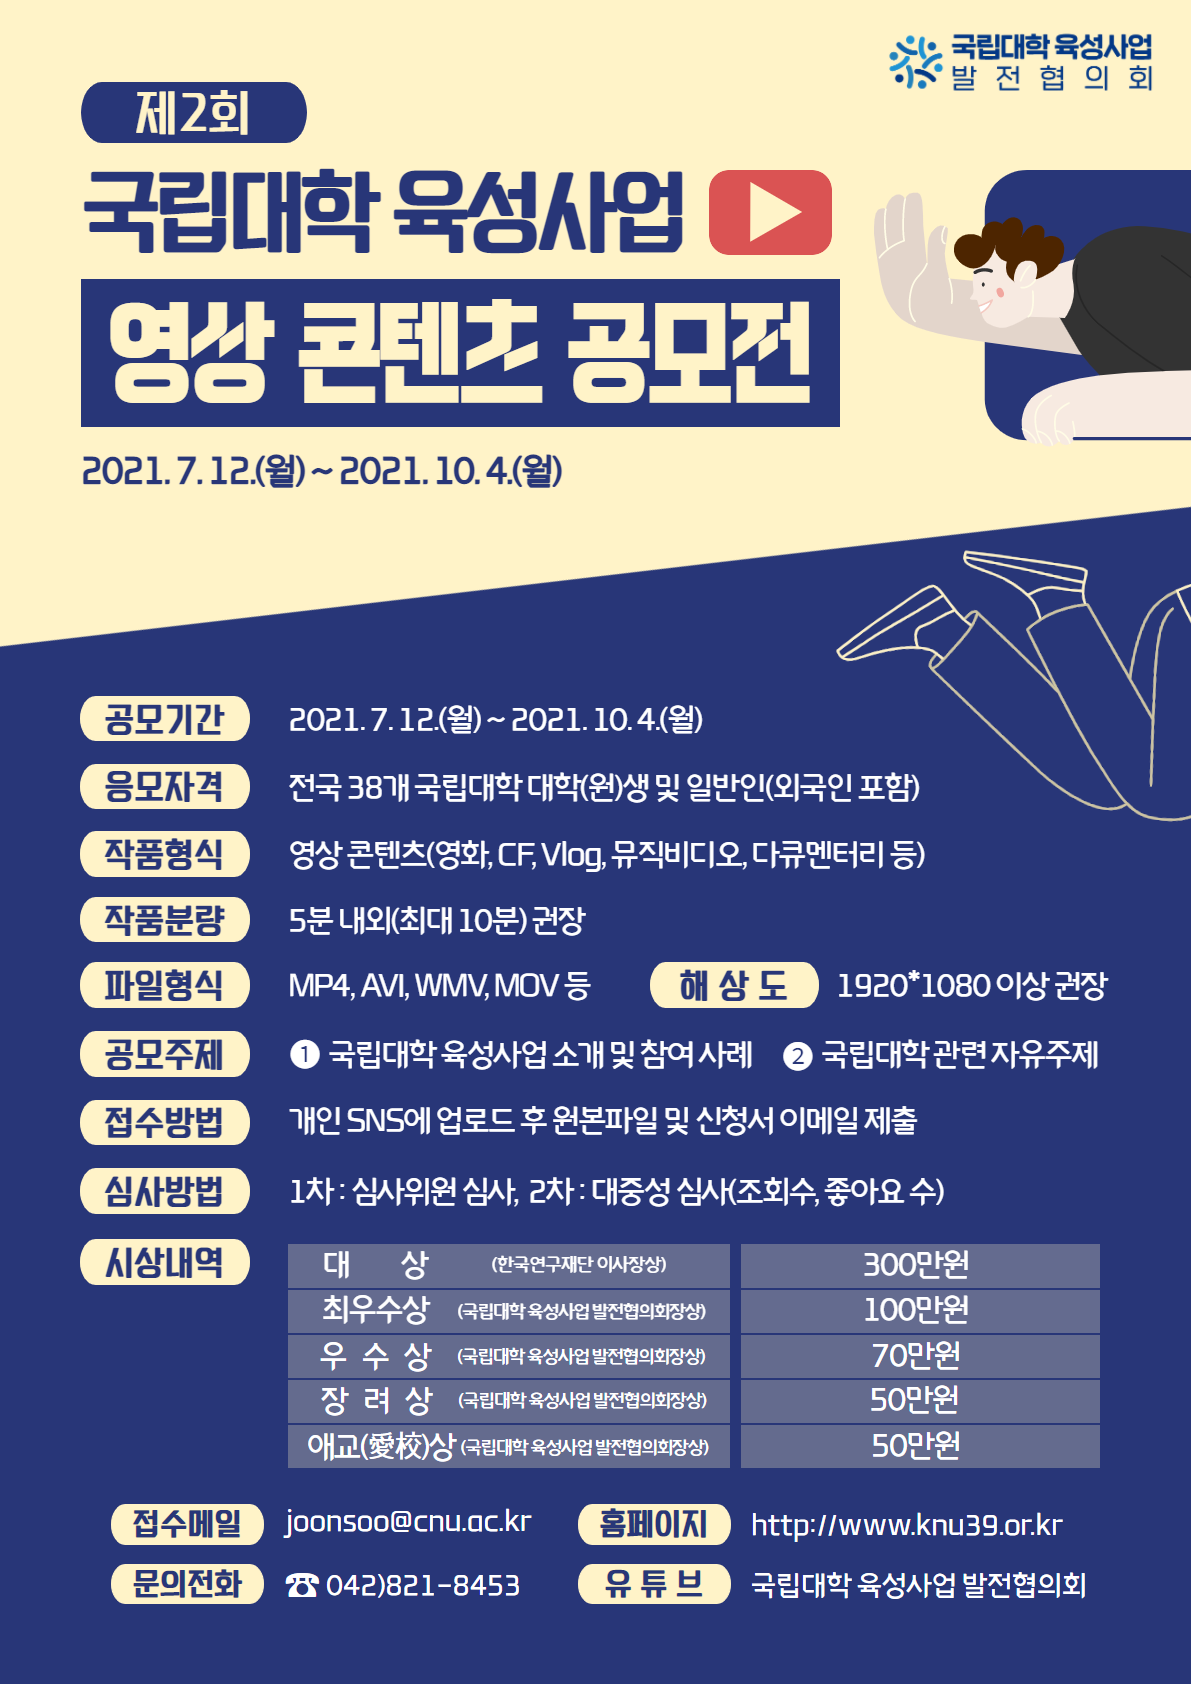 제2회 국립대학 육성사업 영상 콘텐츠 공모전 개최 안내 (기한연장)